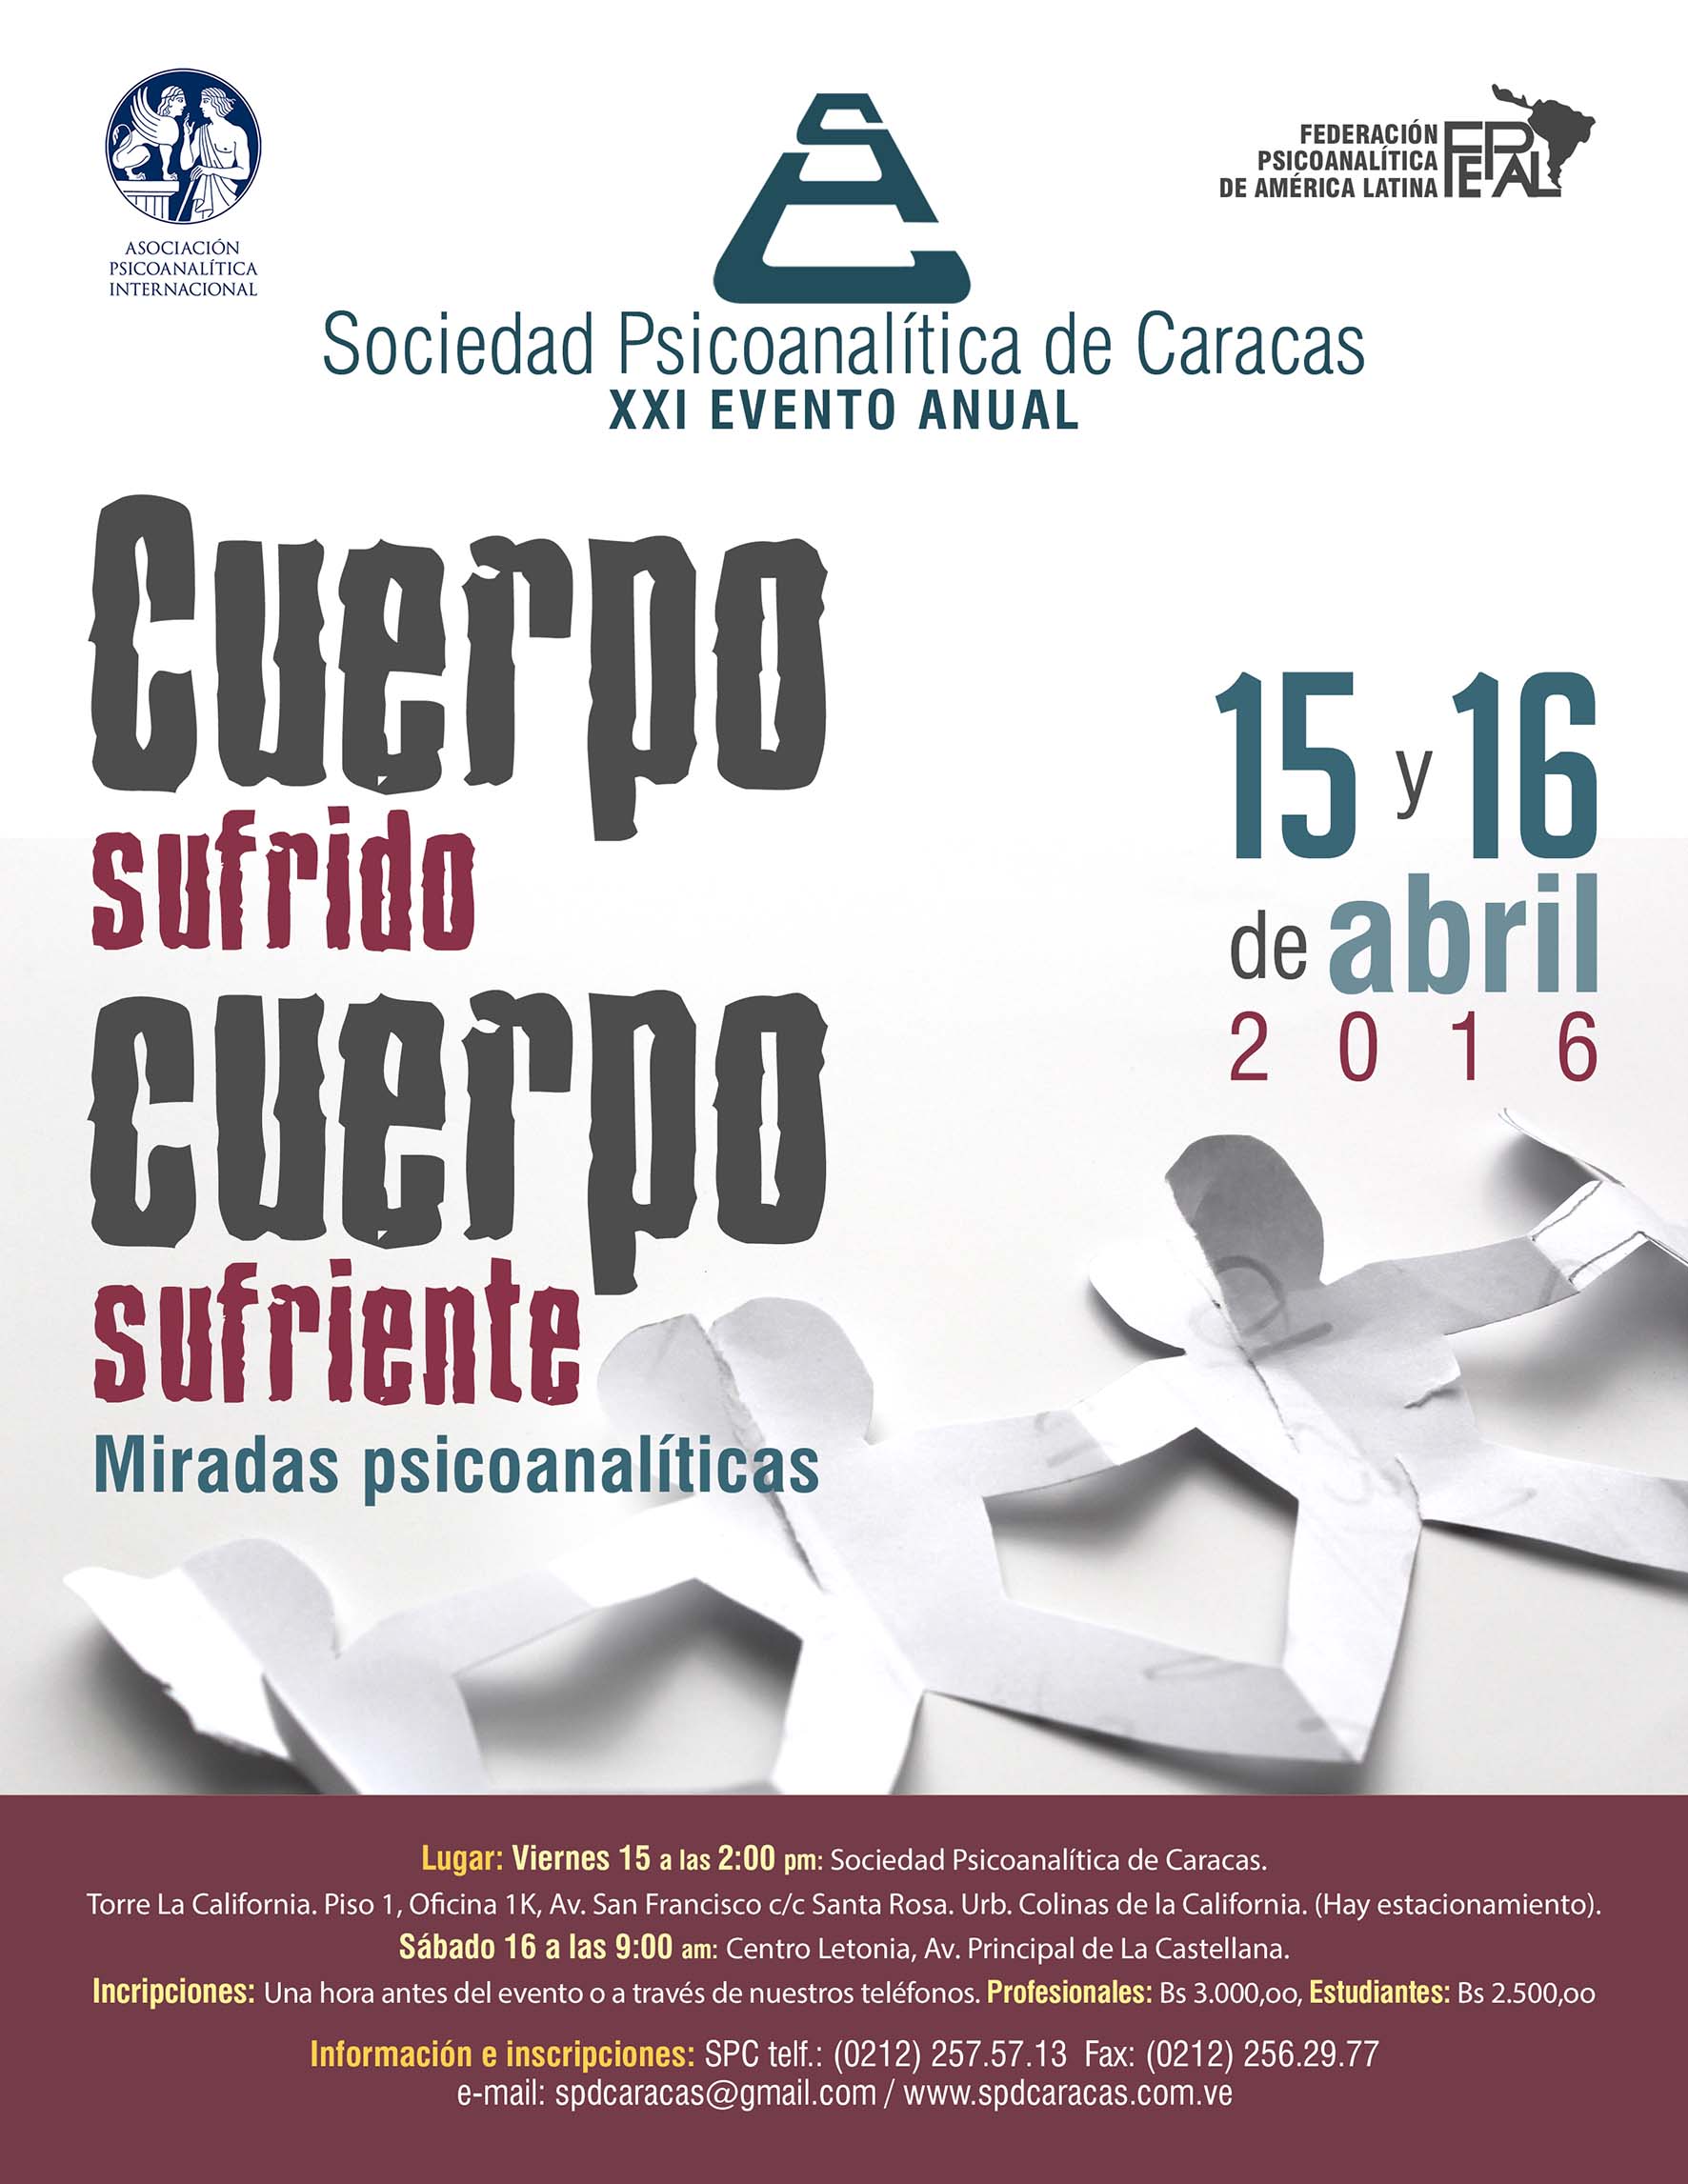 XXI ENCUENTRO PSICOANALITICO - EVENTO ANUAL 15-16 ABRIL 2016